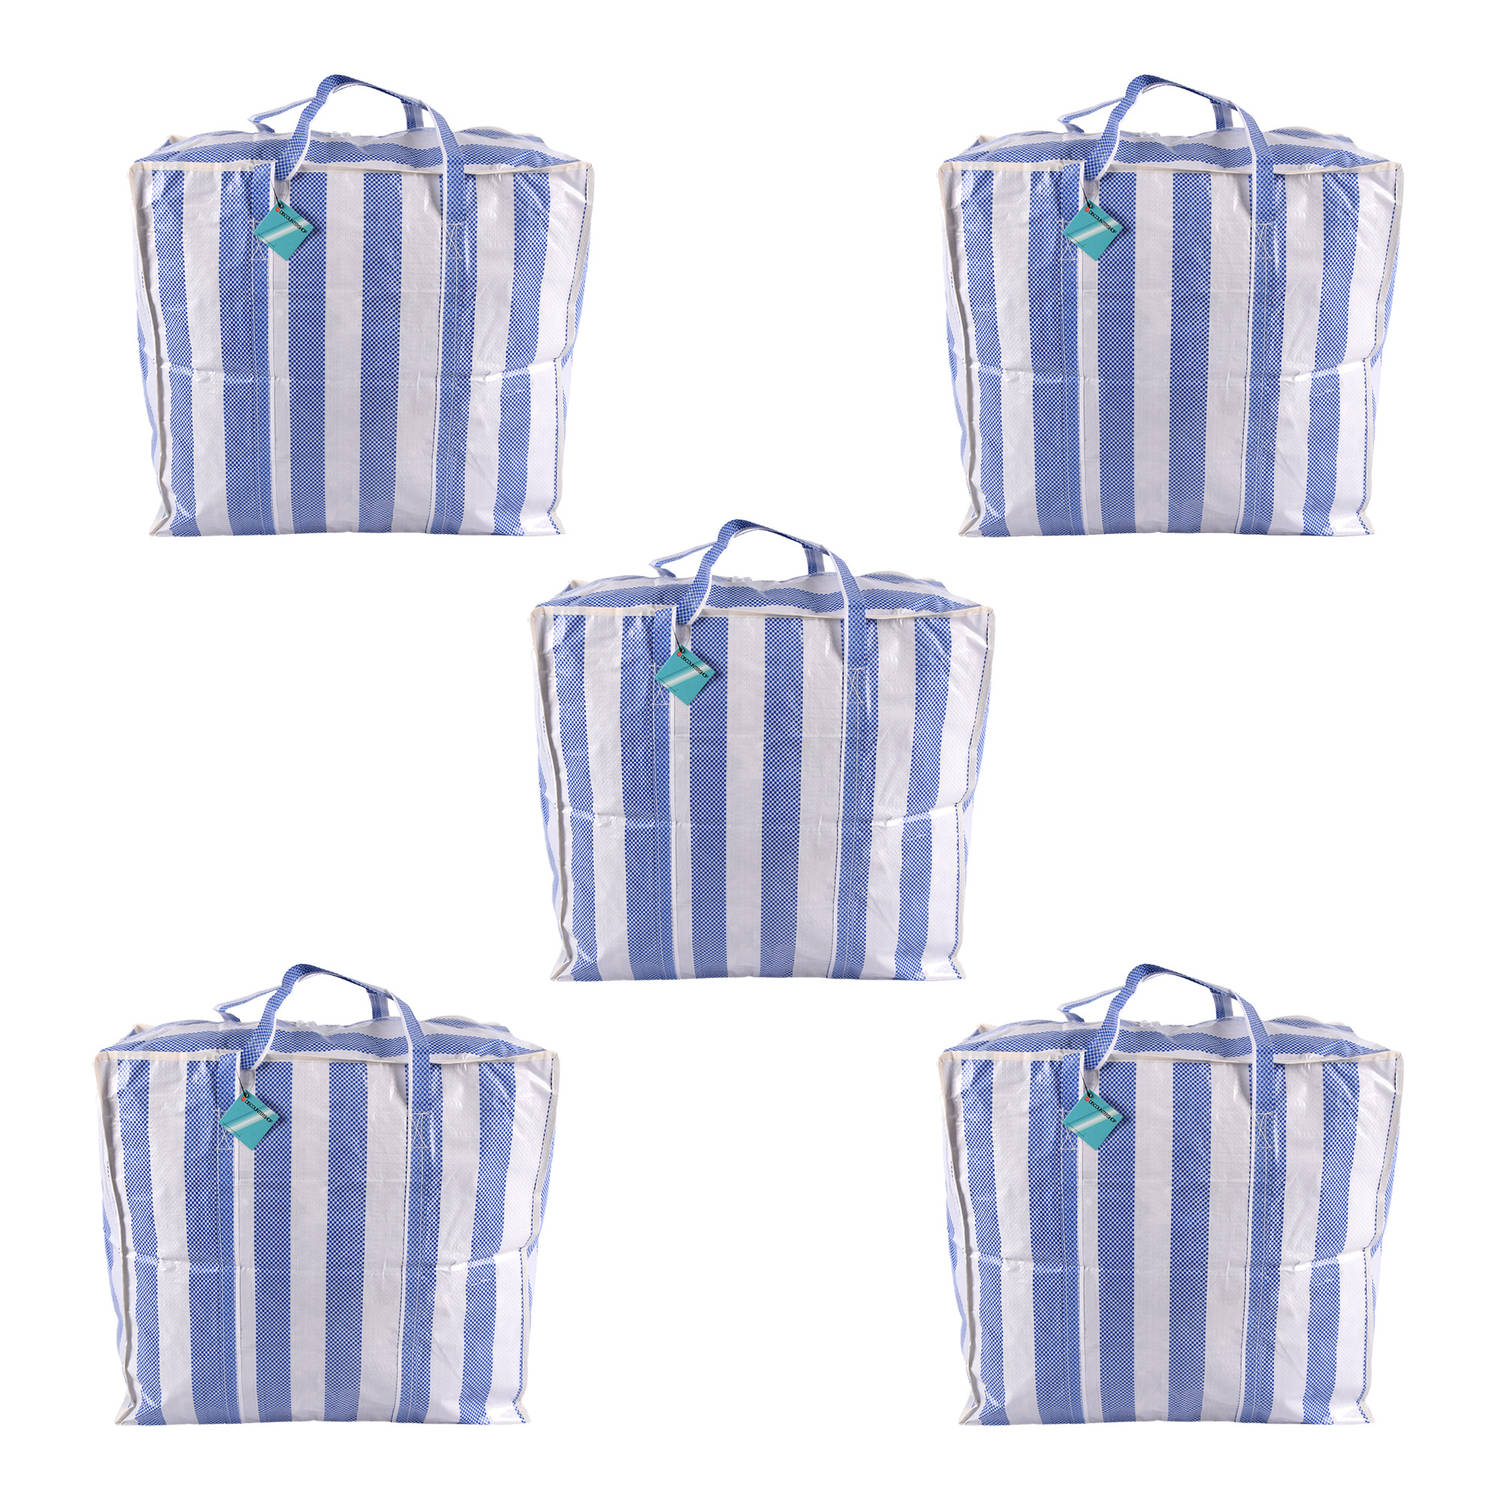 Set van 5 Boodschappentas - Sterke Handvatten - Blauw & Wit - 82 Liter Capaciteit - 55x30x50cm - Jumbo Plastic Shopper Tas